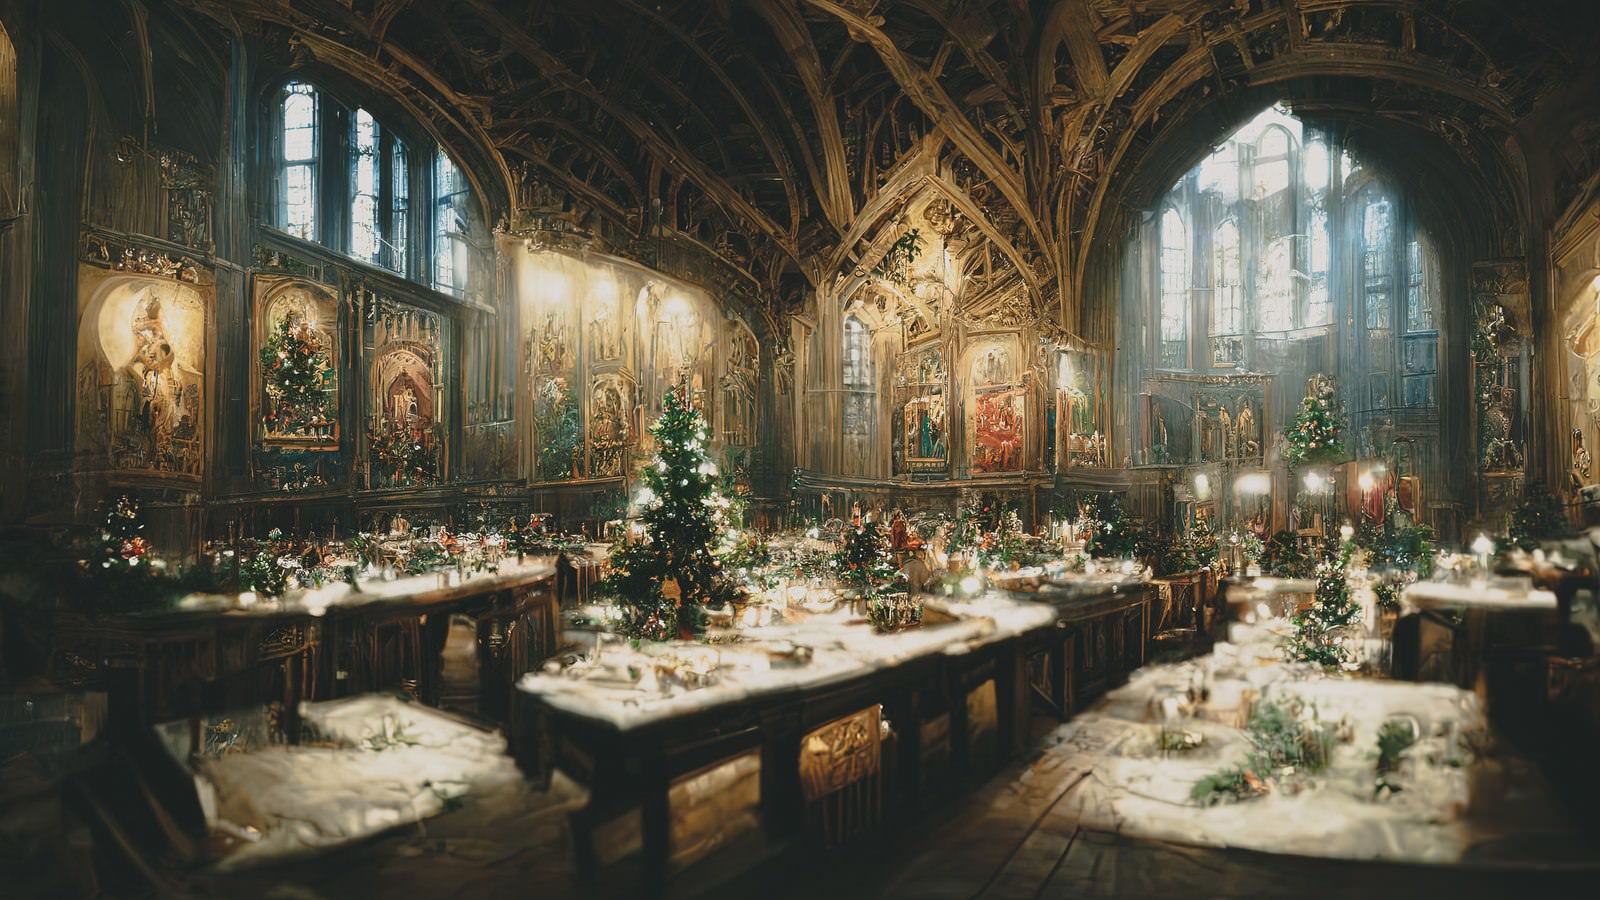 「クリスマスに彩られた礼拝堂 | フリー素材のぱくたそ」の写真